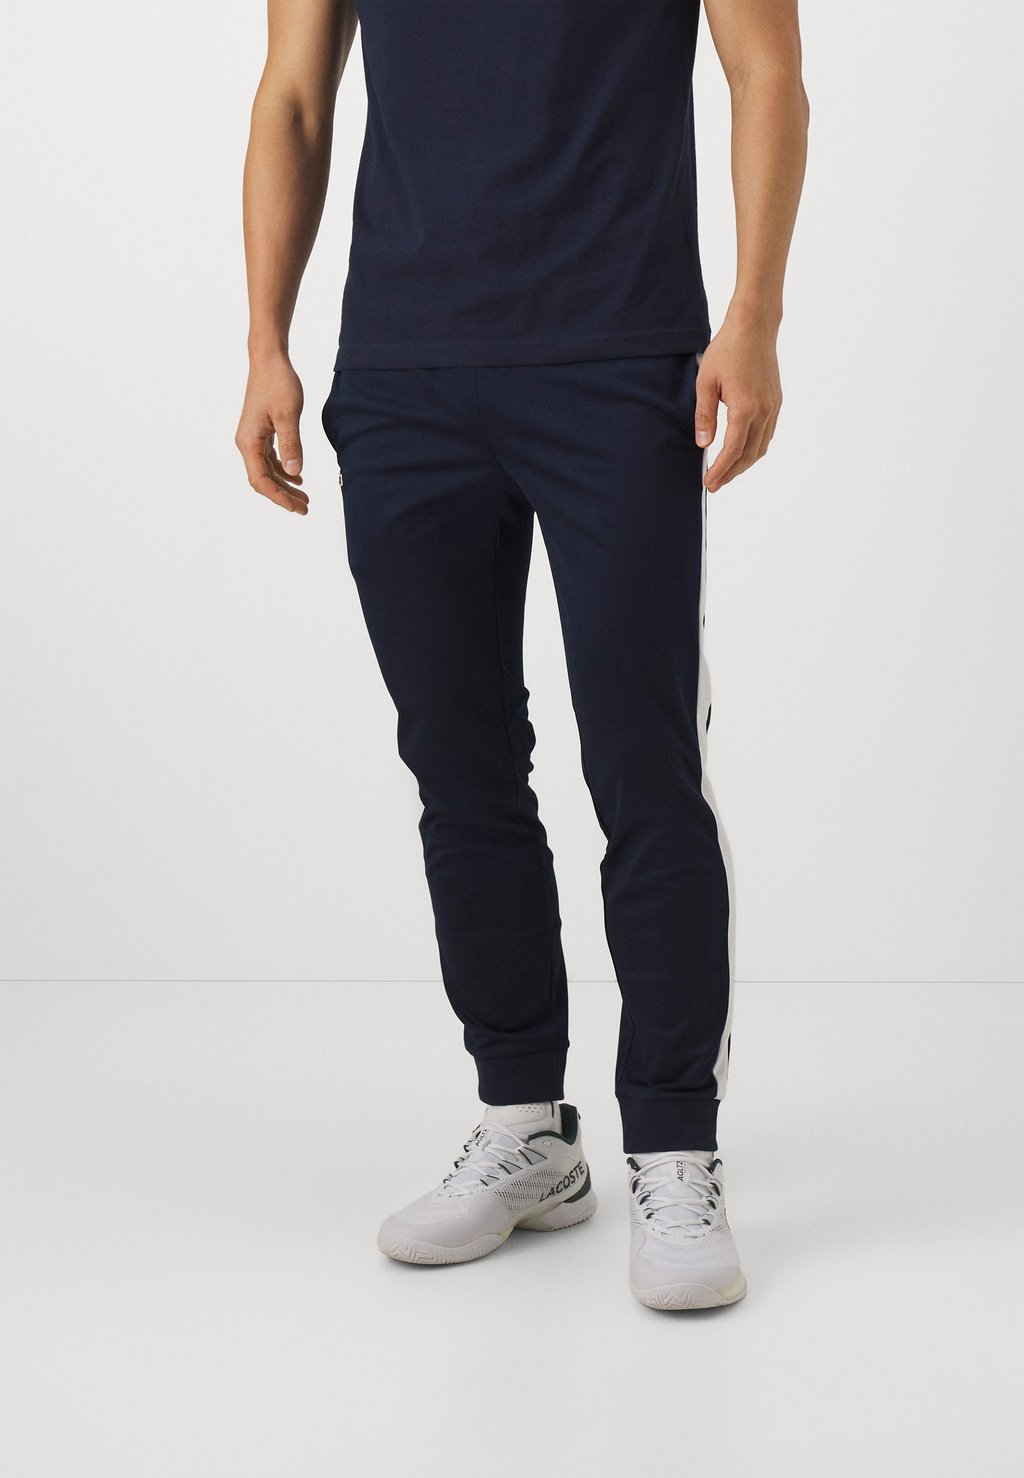 Спортивные брюки Trousers Tc Lacoste, цвет navy blue/white